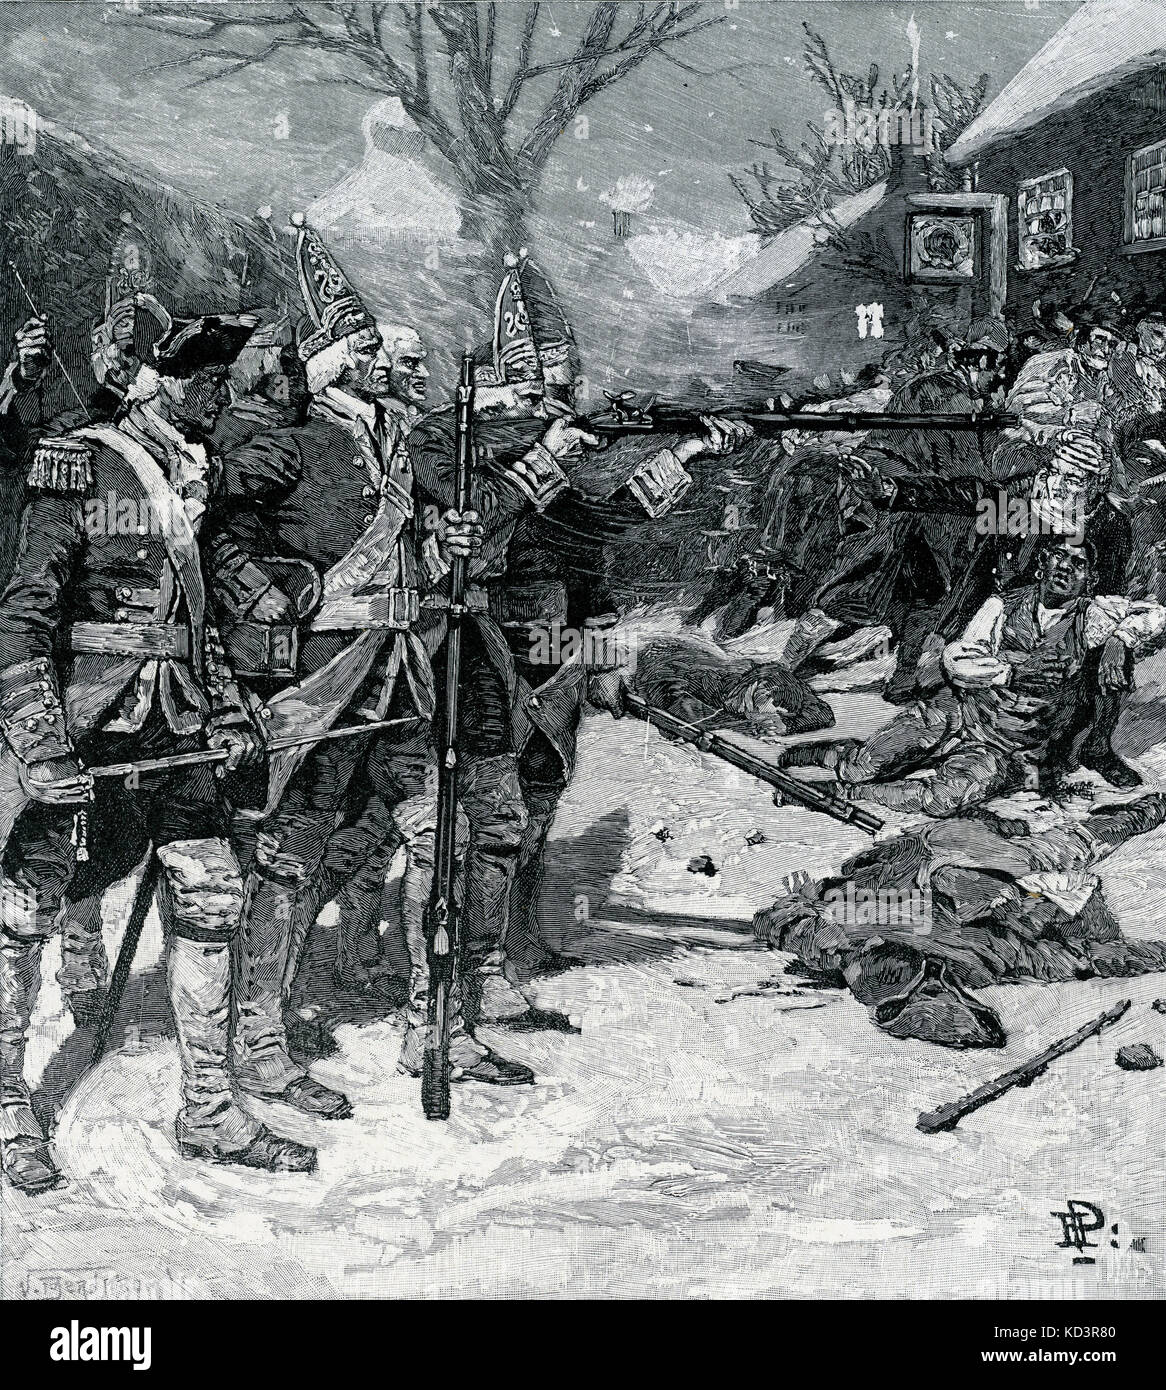 Massacre de Boston / incident sur King Street, 1770. Révolution américaine. Illustration de Howard Pyle, 1901 Banque D'Images